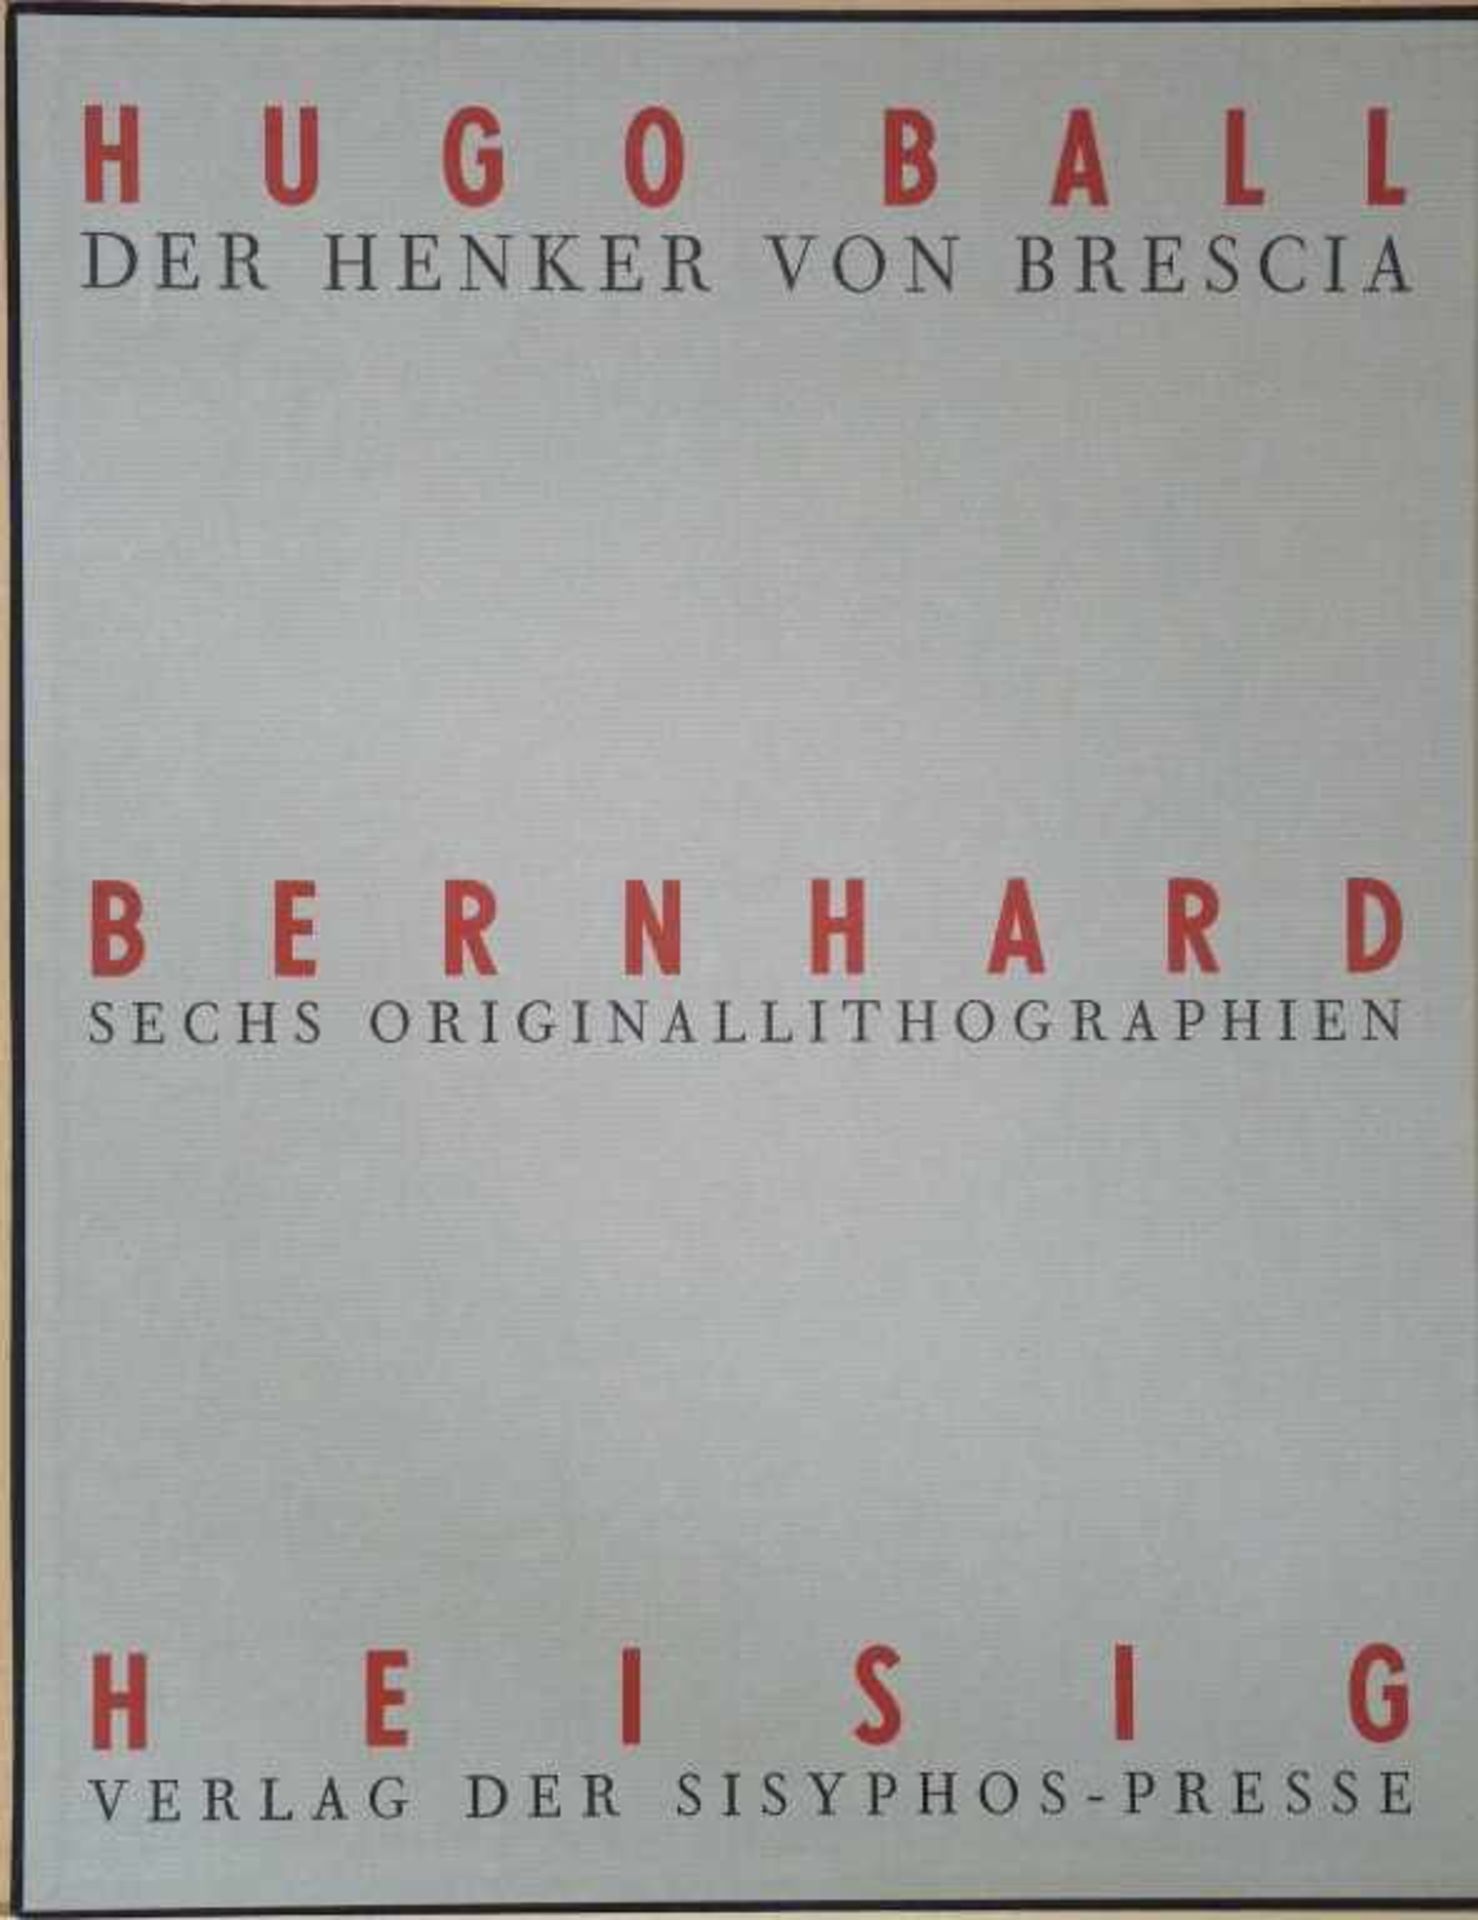 HEISIG, BERNHARD: zu Hugo Ball "Der Henker von Brescia"60 Seiten: 6 ganzseitige Lithografien auf